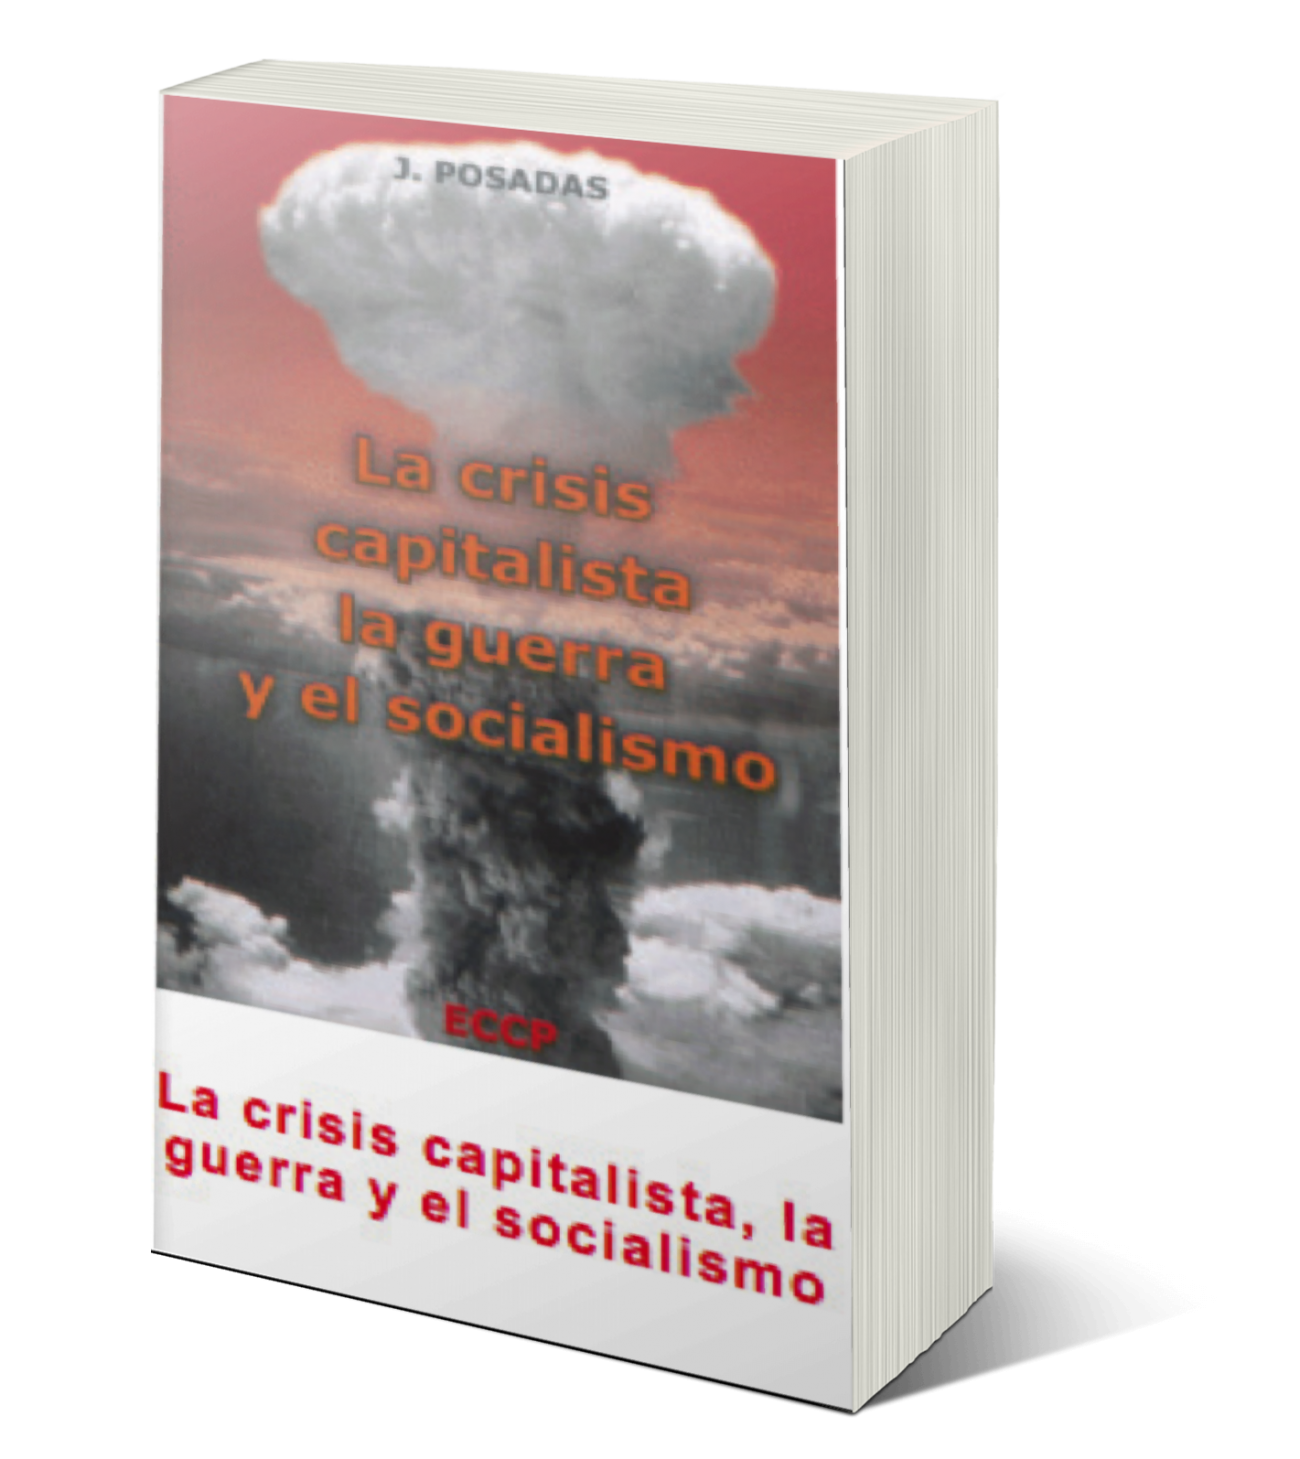 La crisis capitalista, la guerra y el socialismo